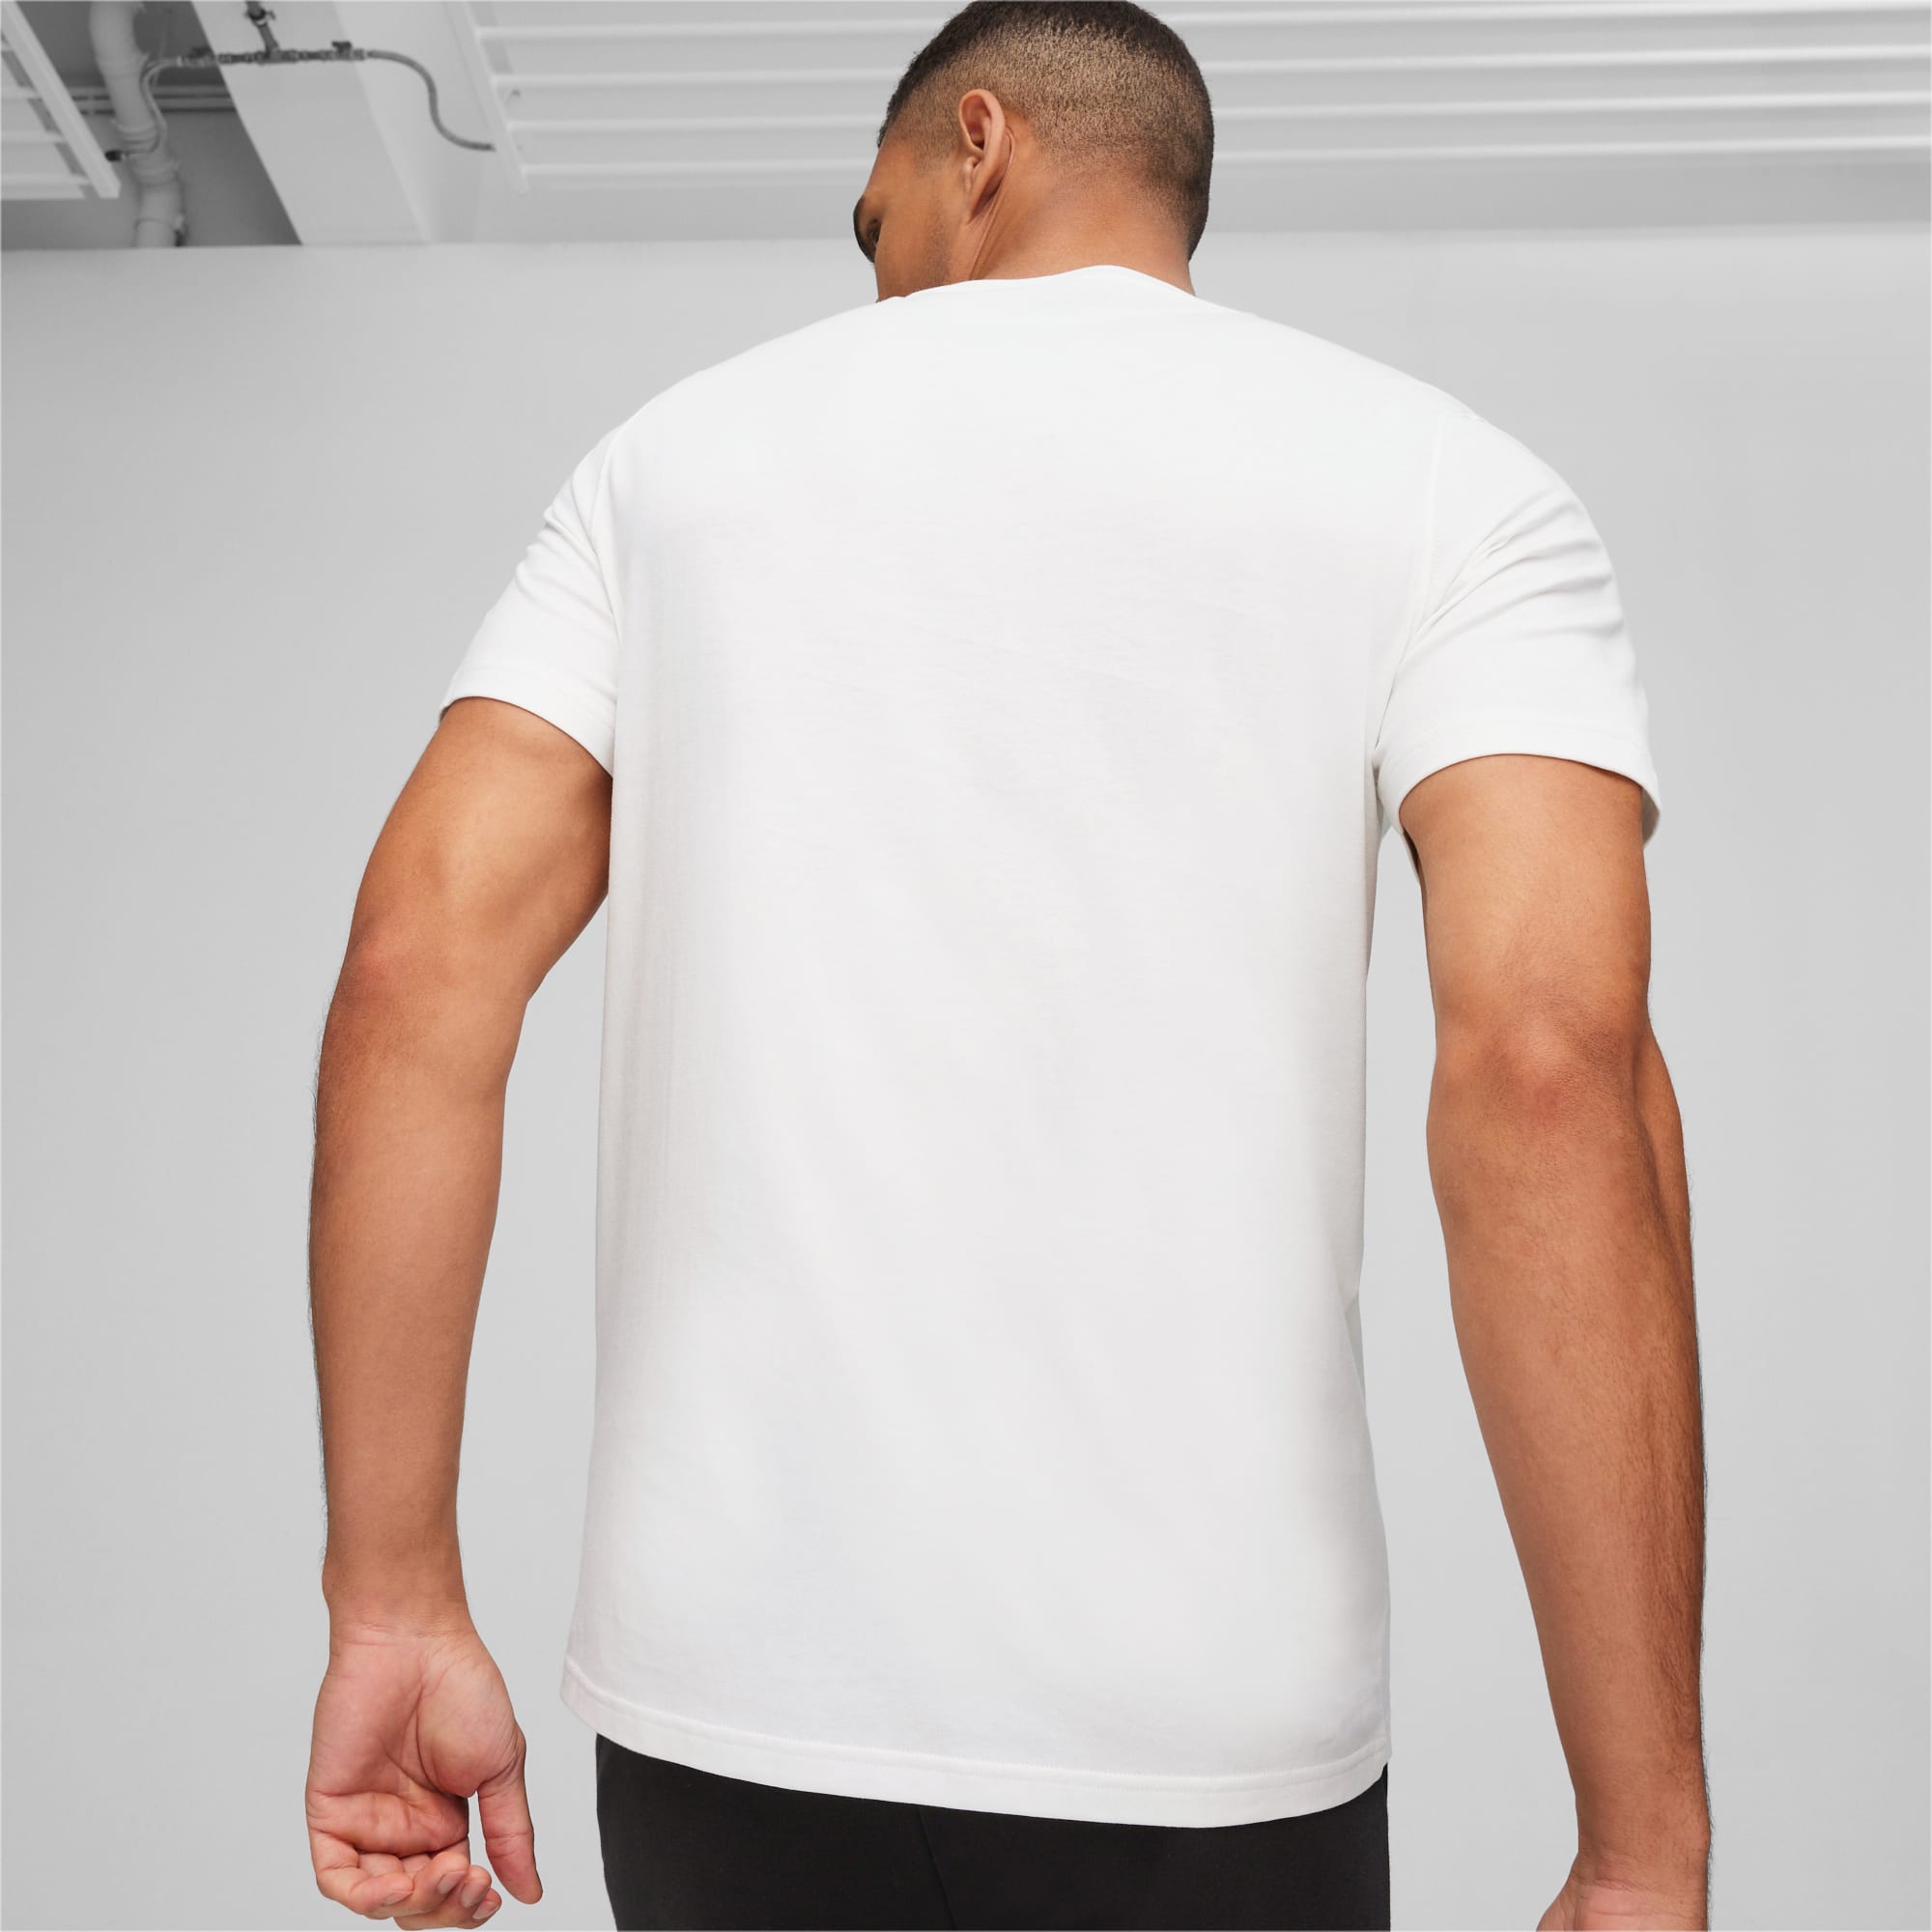 PUMA POWER T-shirt Met Print Voor Heren, Wit/Groen